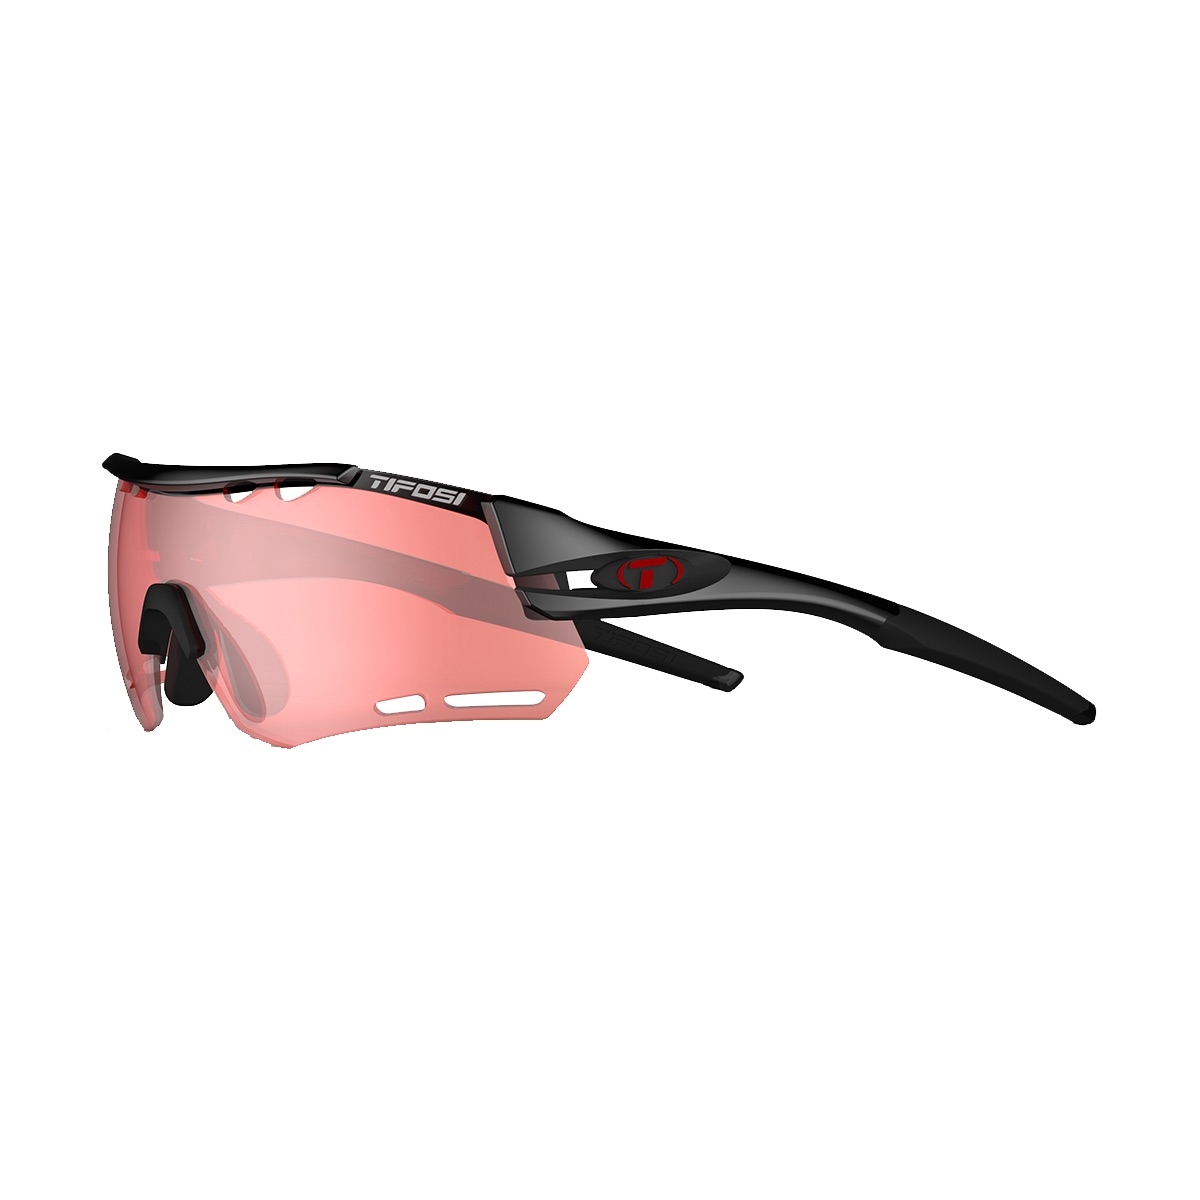 tifosi women's cycling sunglasses